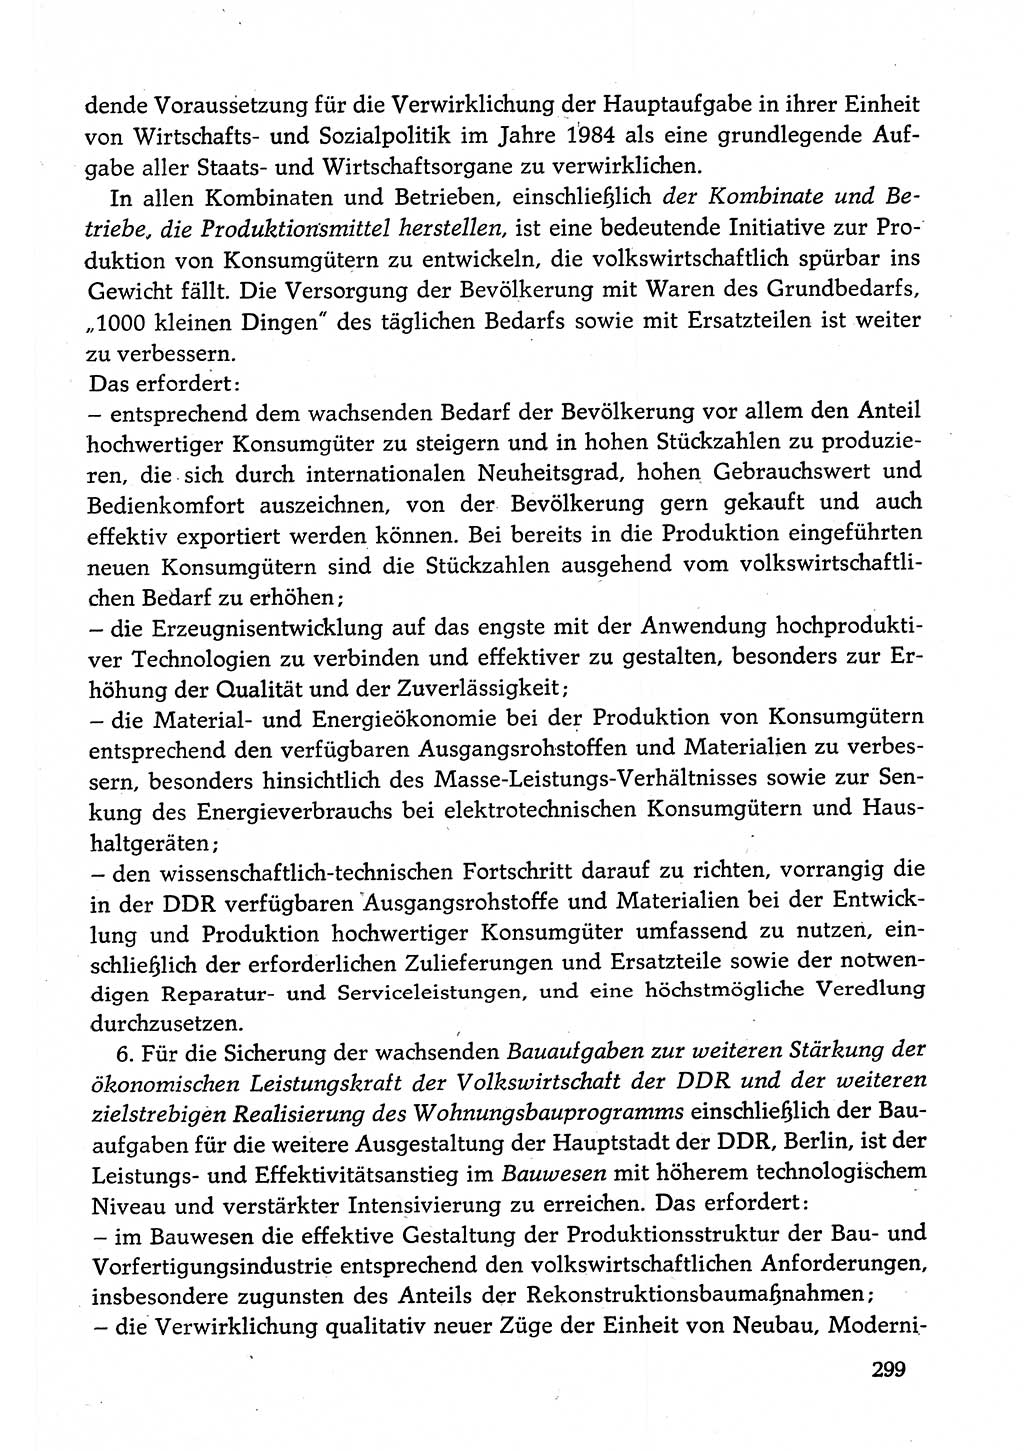 Dokumente der Sozialistischen Einheitspartei Deutschlands (SED) [Deutsche Demokratische Republik (DDR)] 1982-1983, Seite 299 (Dok. SED DDR 1982-1983, S. 299)